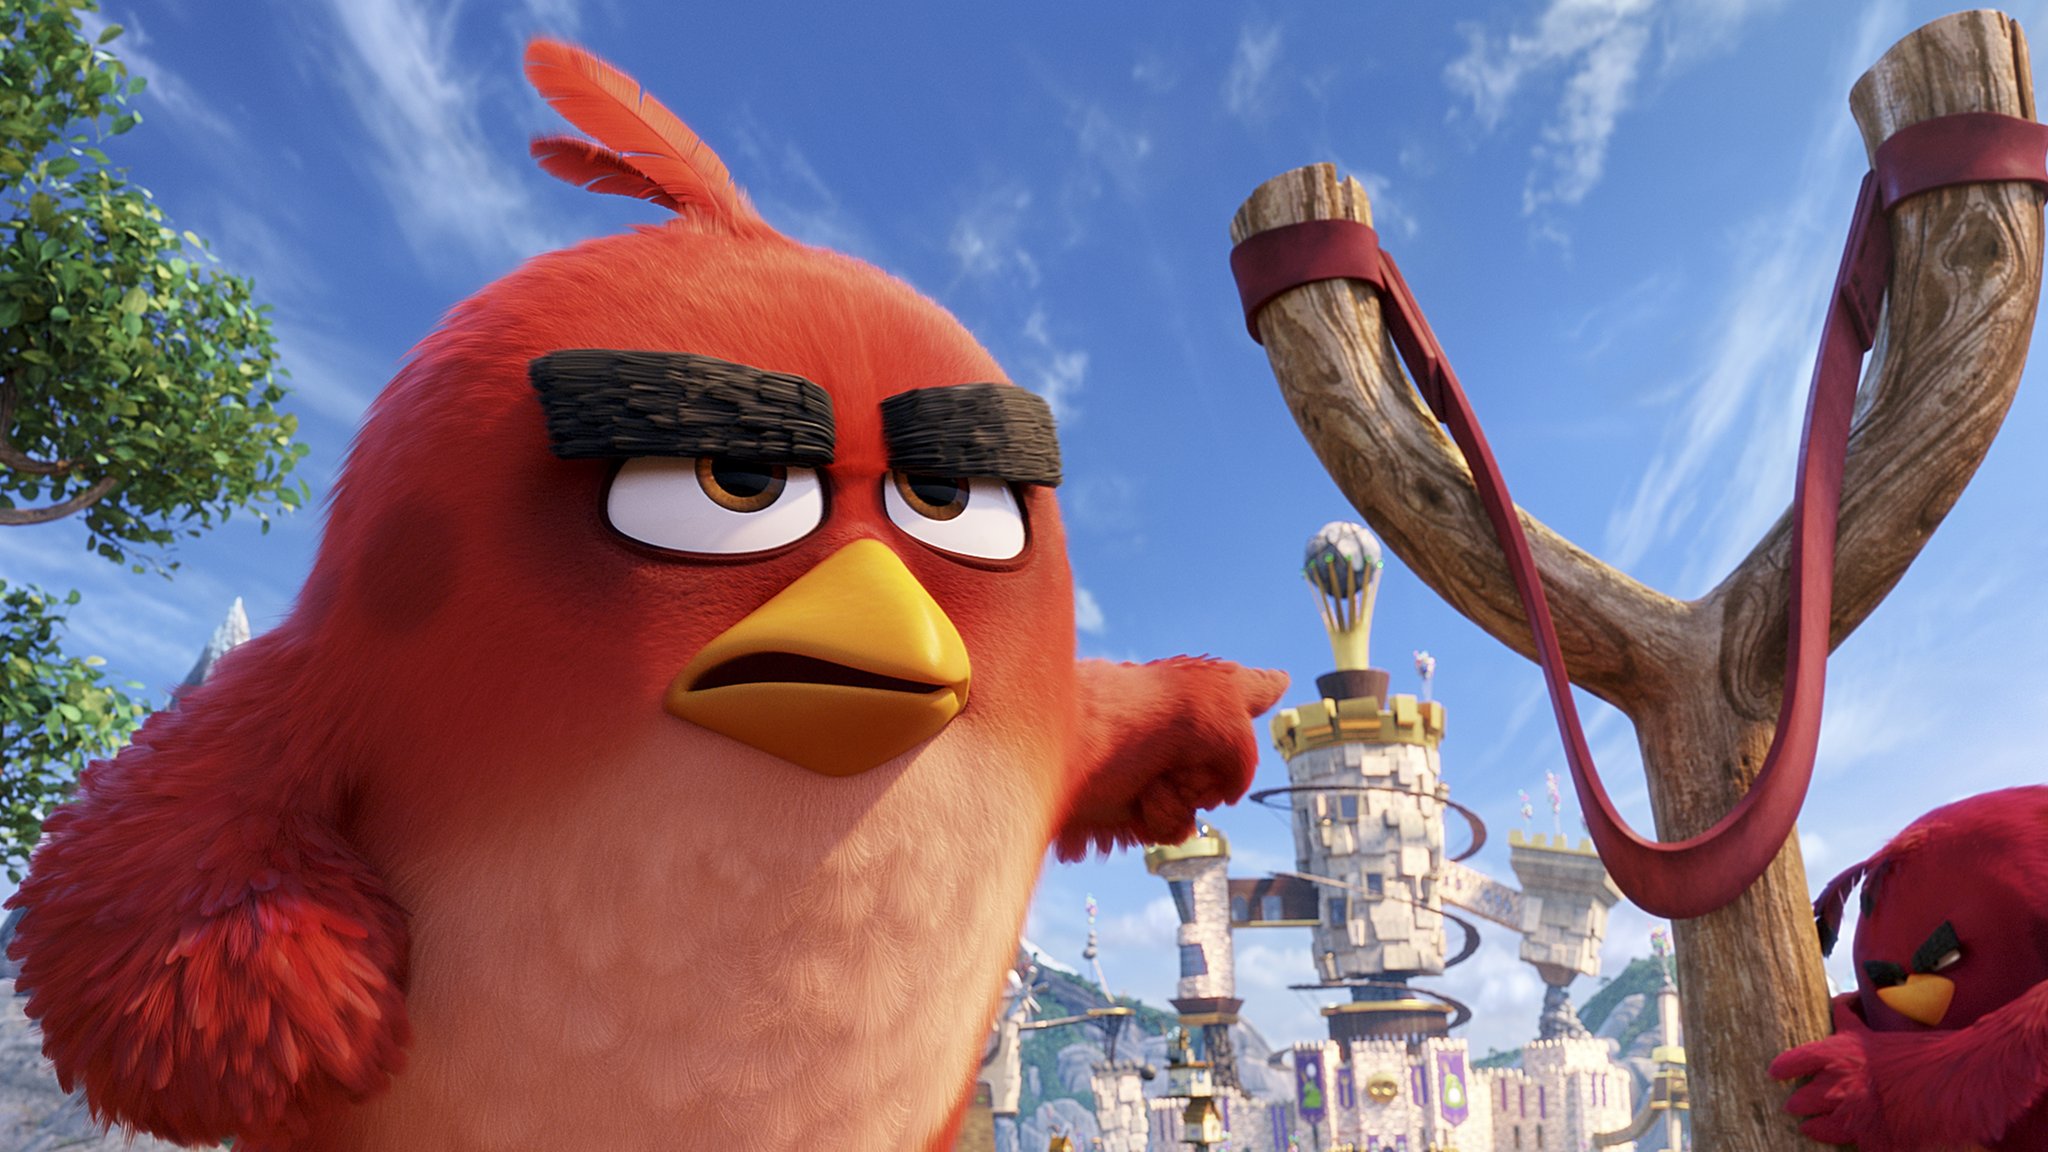 Энгри Бердс (Angry Birds) - красивые картинки (40 фото)